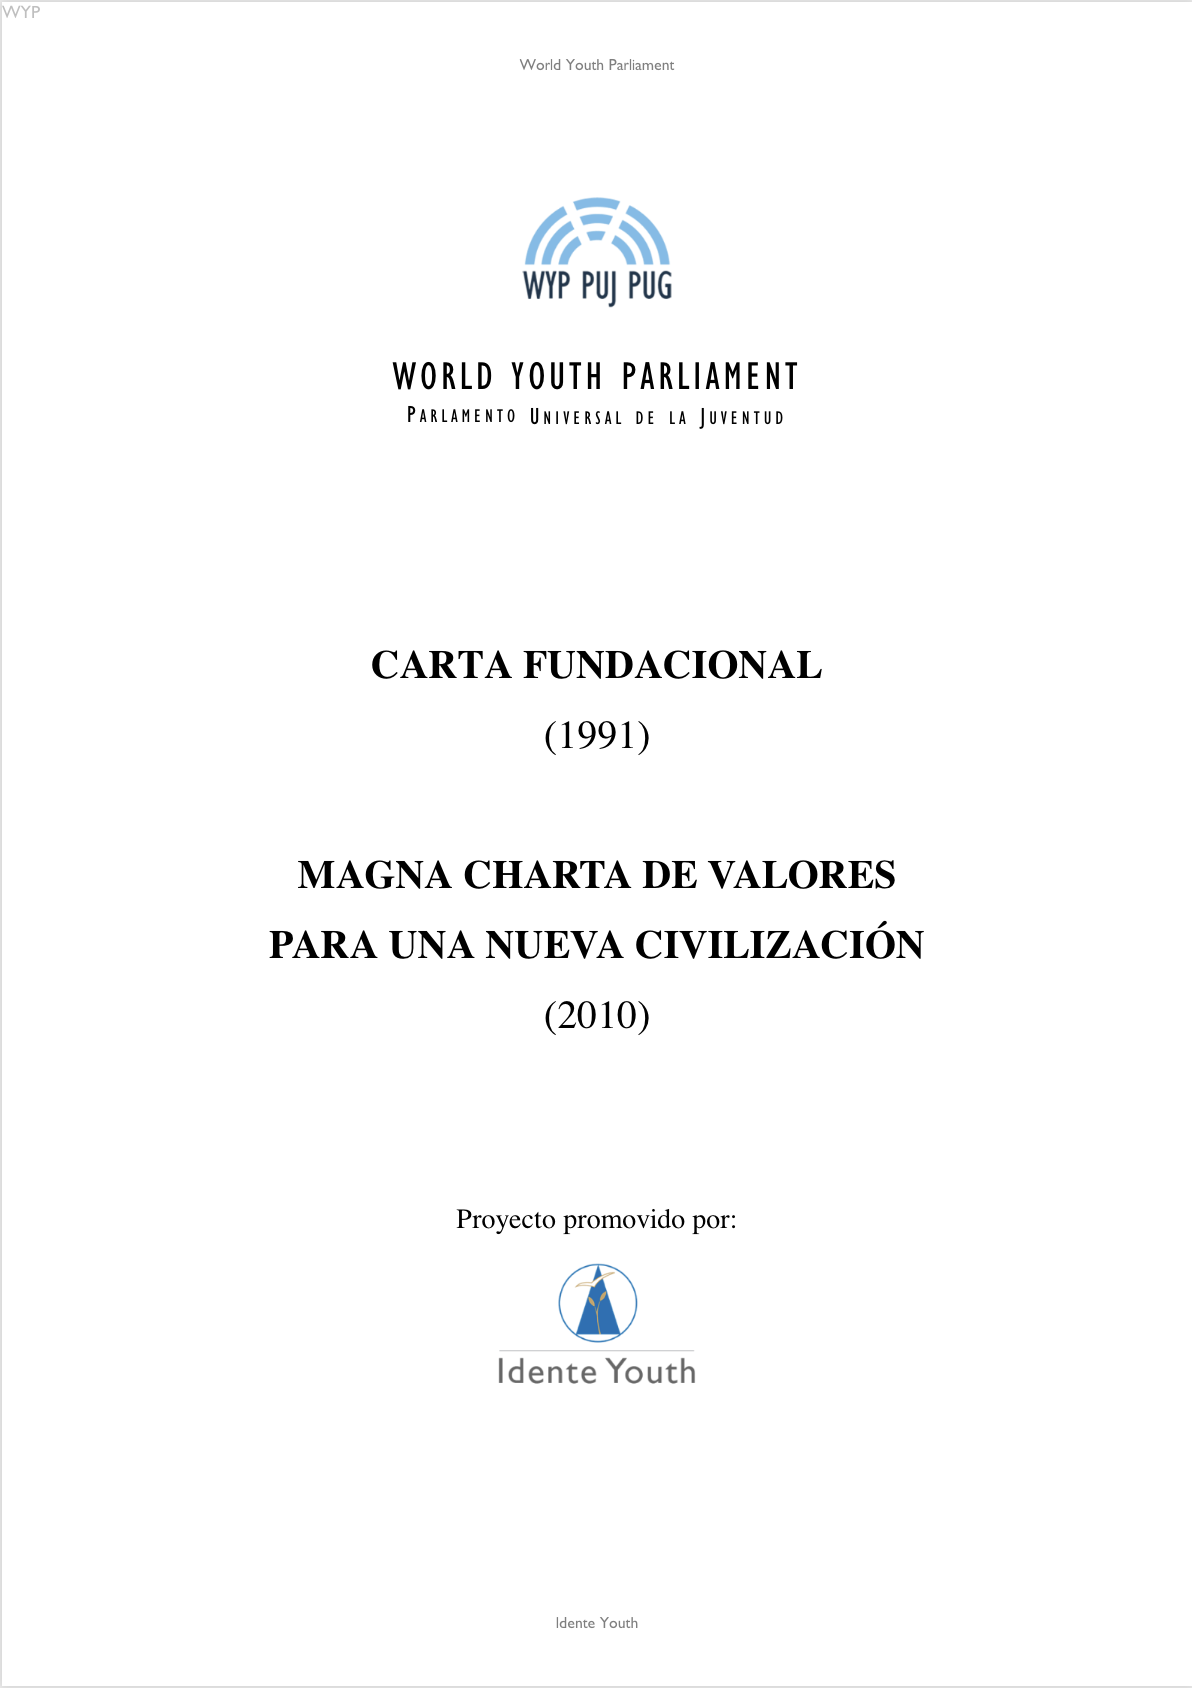 Carta Fundacional y Magna Charta_WYP